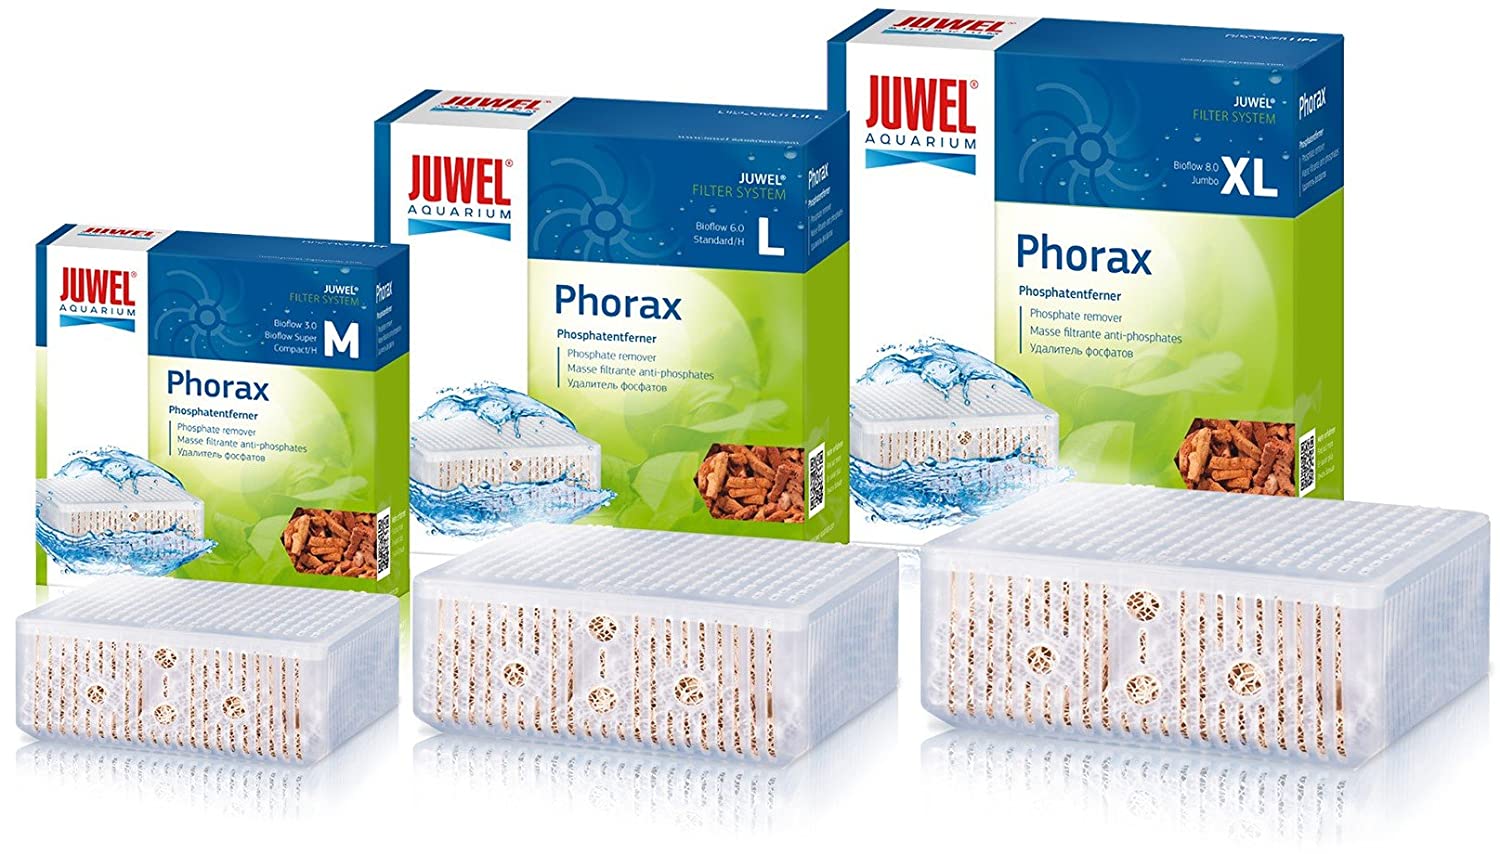 Juwel Phorax - Phosphate Remover